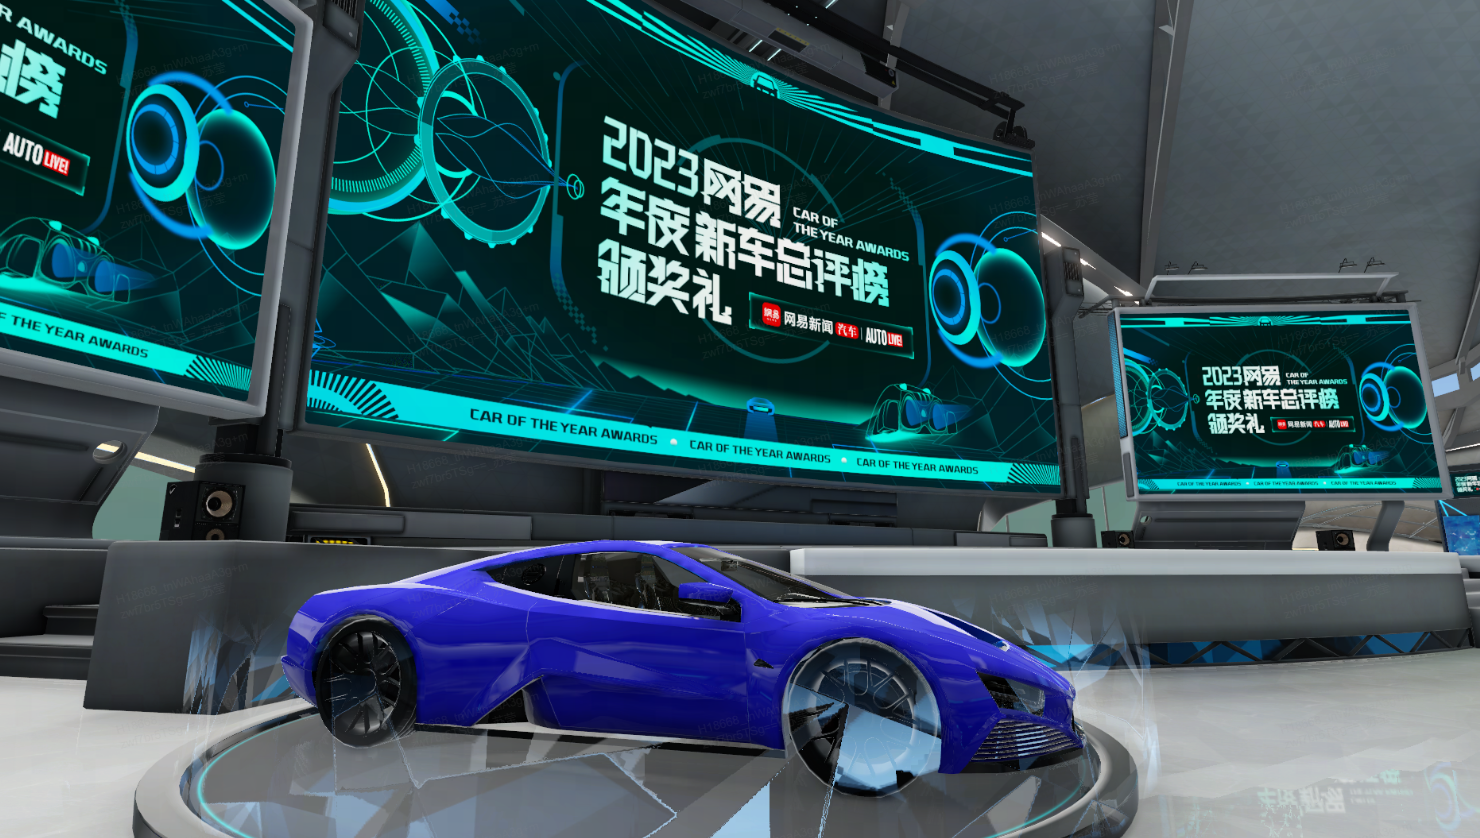 这是一张展示未来风格概念车的图片，车辆呈现蓝色，背景有多个显示屏展示着2023年的高科技信息。